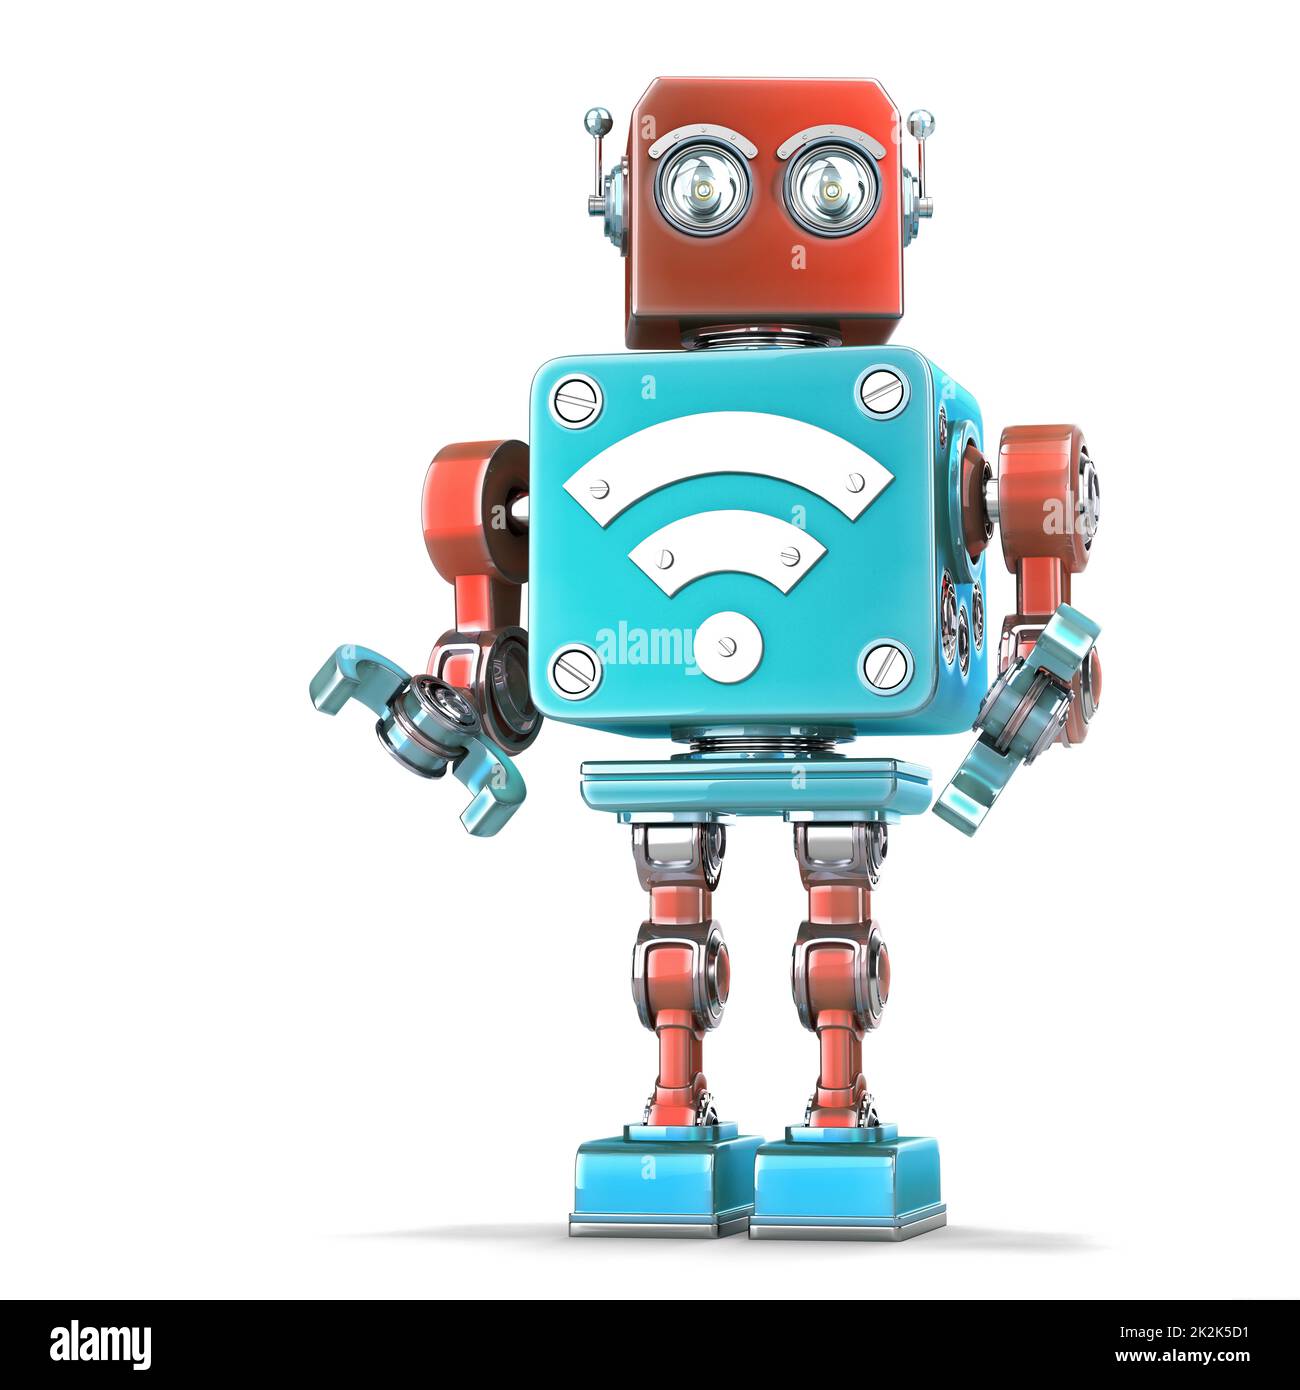 Robot clásico con señal Wi-Fi. Concepto de tecnología. Isloated. Contiene el trazado de recorte Foto de stock